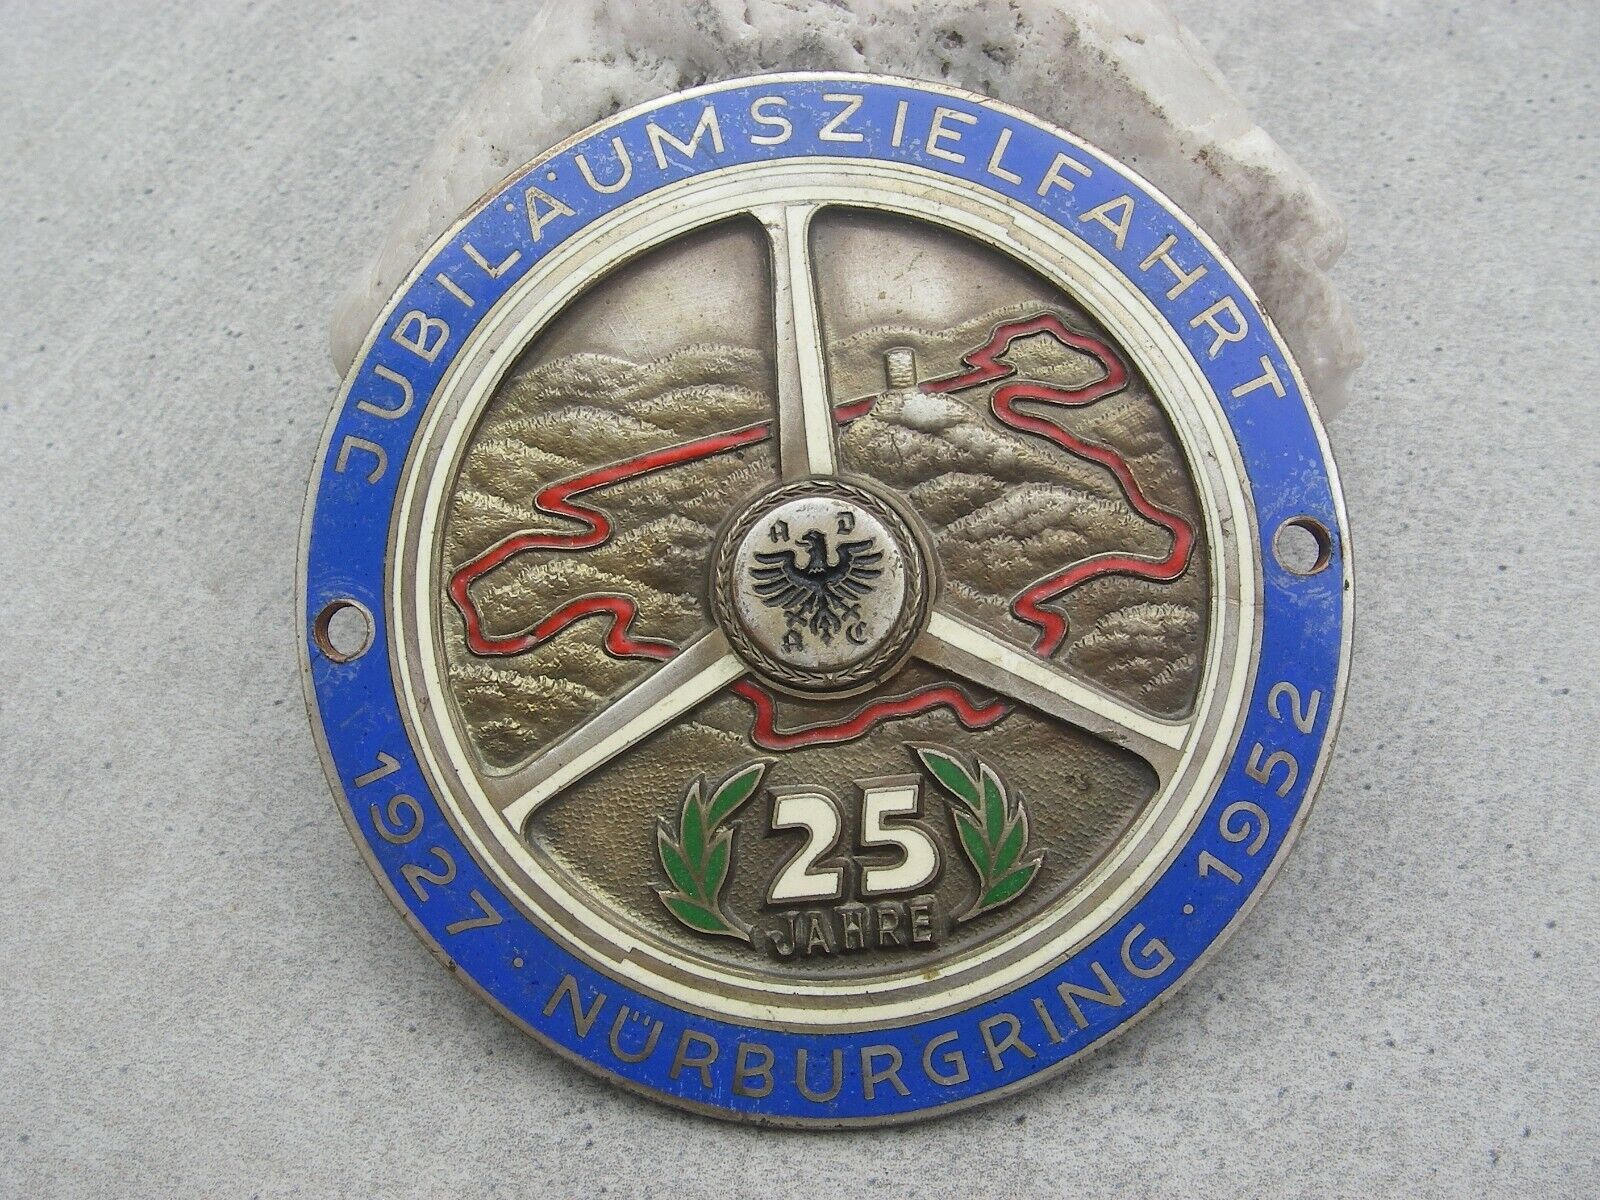 sought after, vintage NÜRBURGRING 1952 Car Badge 25 YEARS JUBILEE NUERBURGRING 